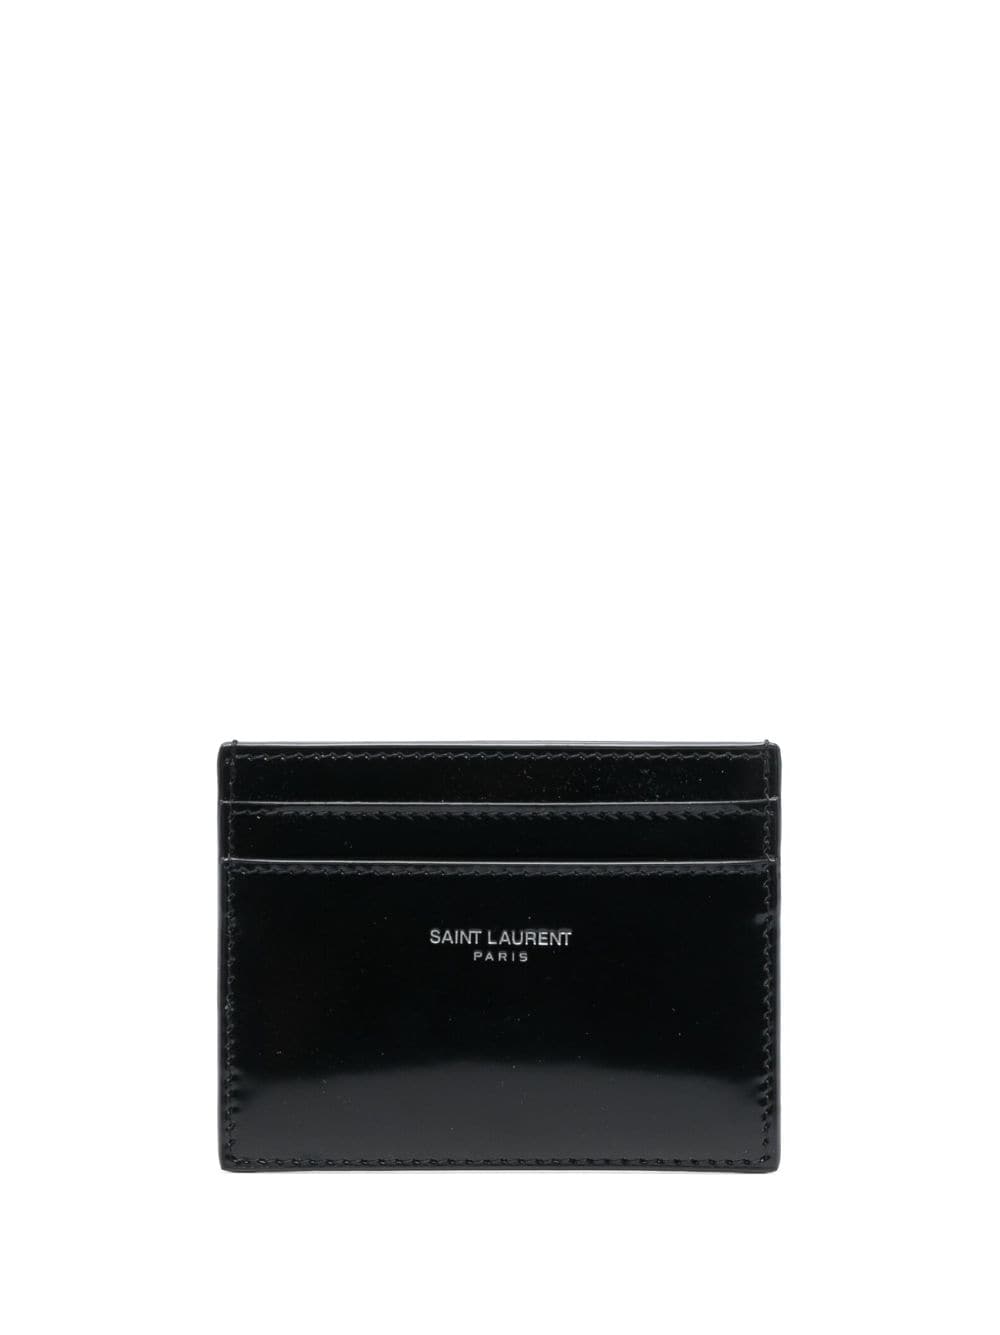 Saint Laurent Paris leather cardholder - Black von Saint Laurent